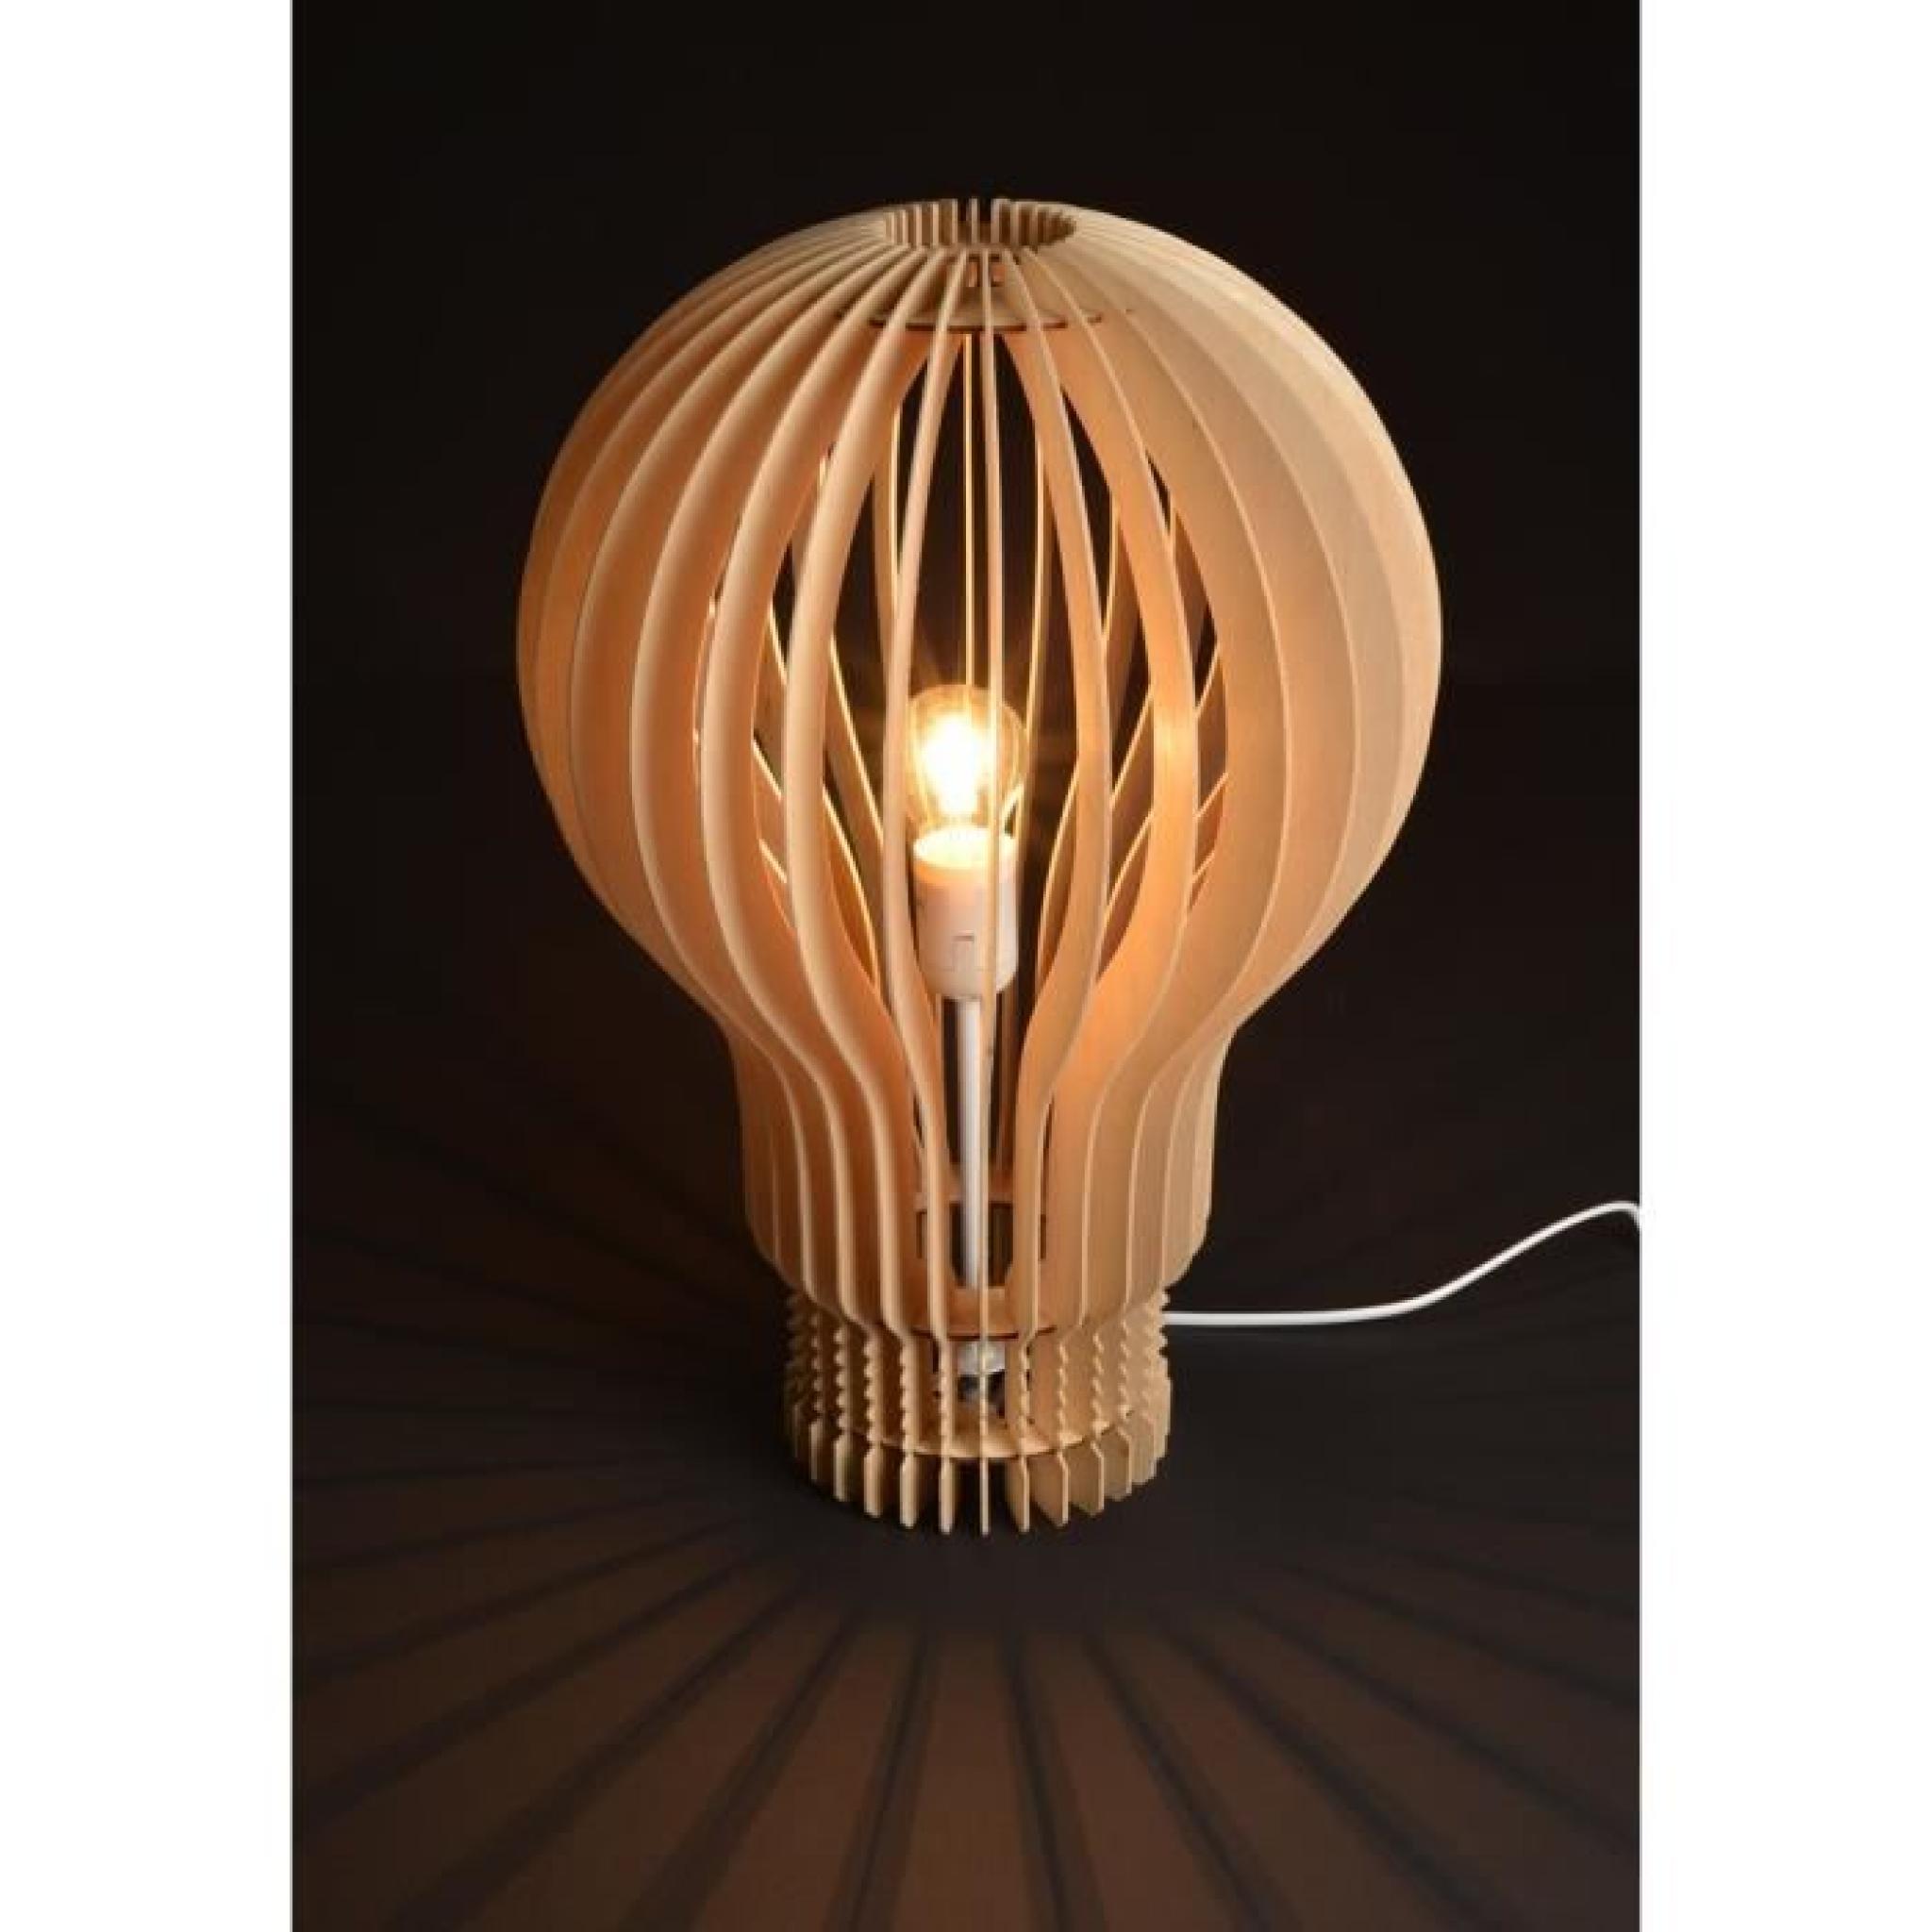 Lampe design en bois ampoule